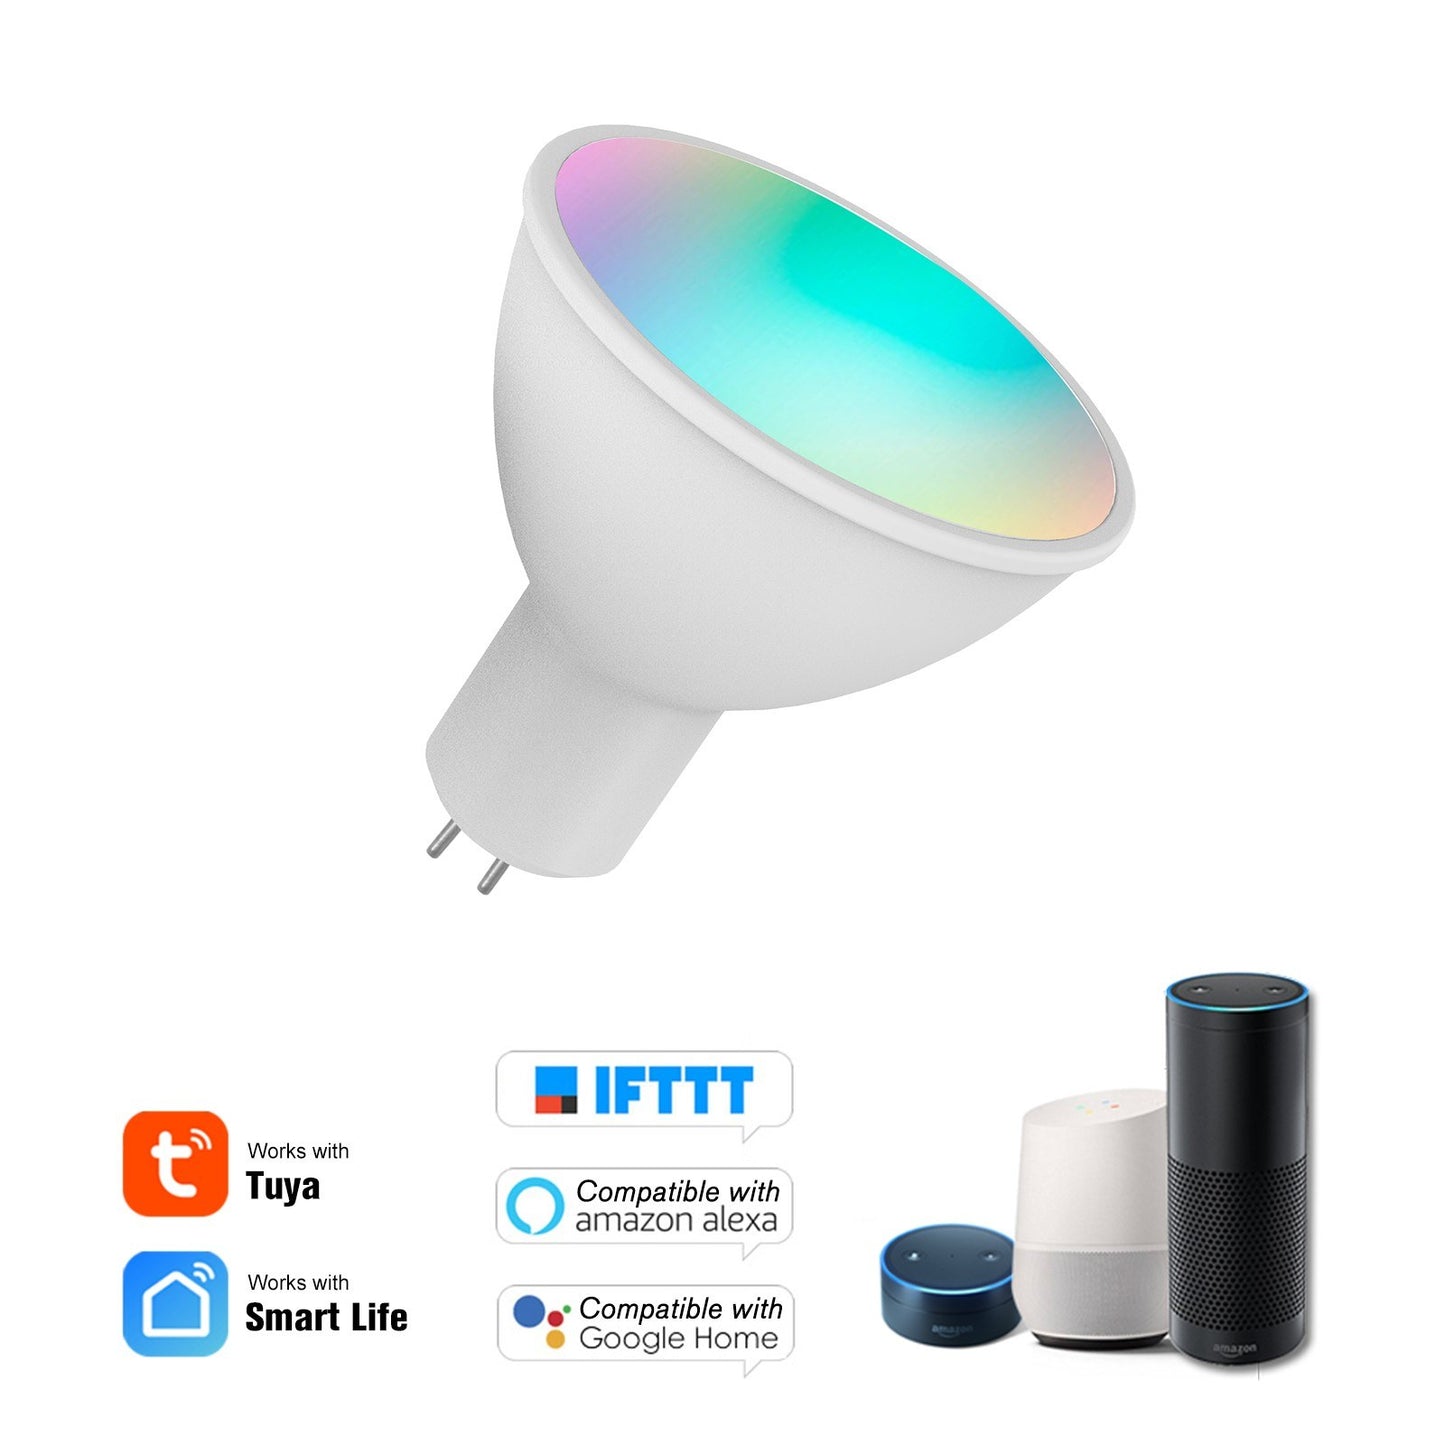 WiFi Smart Bulb RGB+W+C LED Bulb